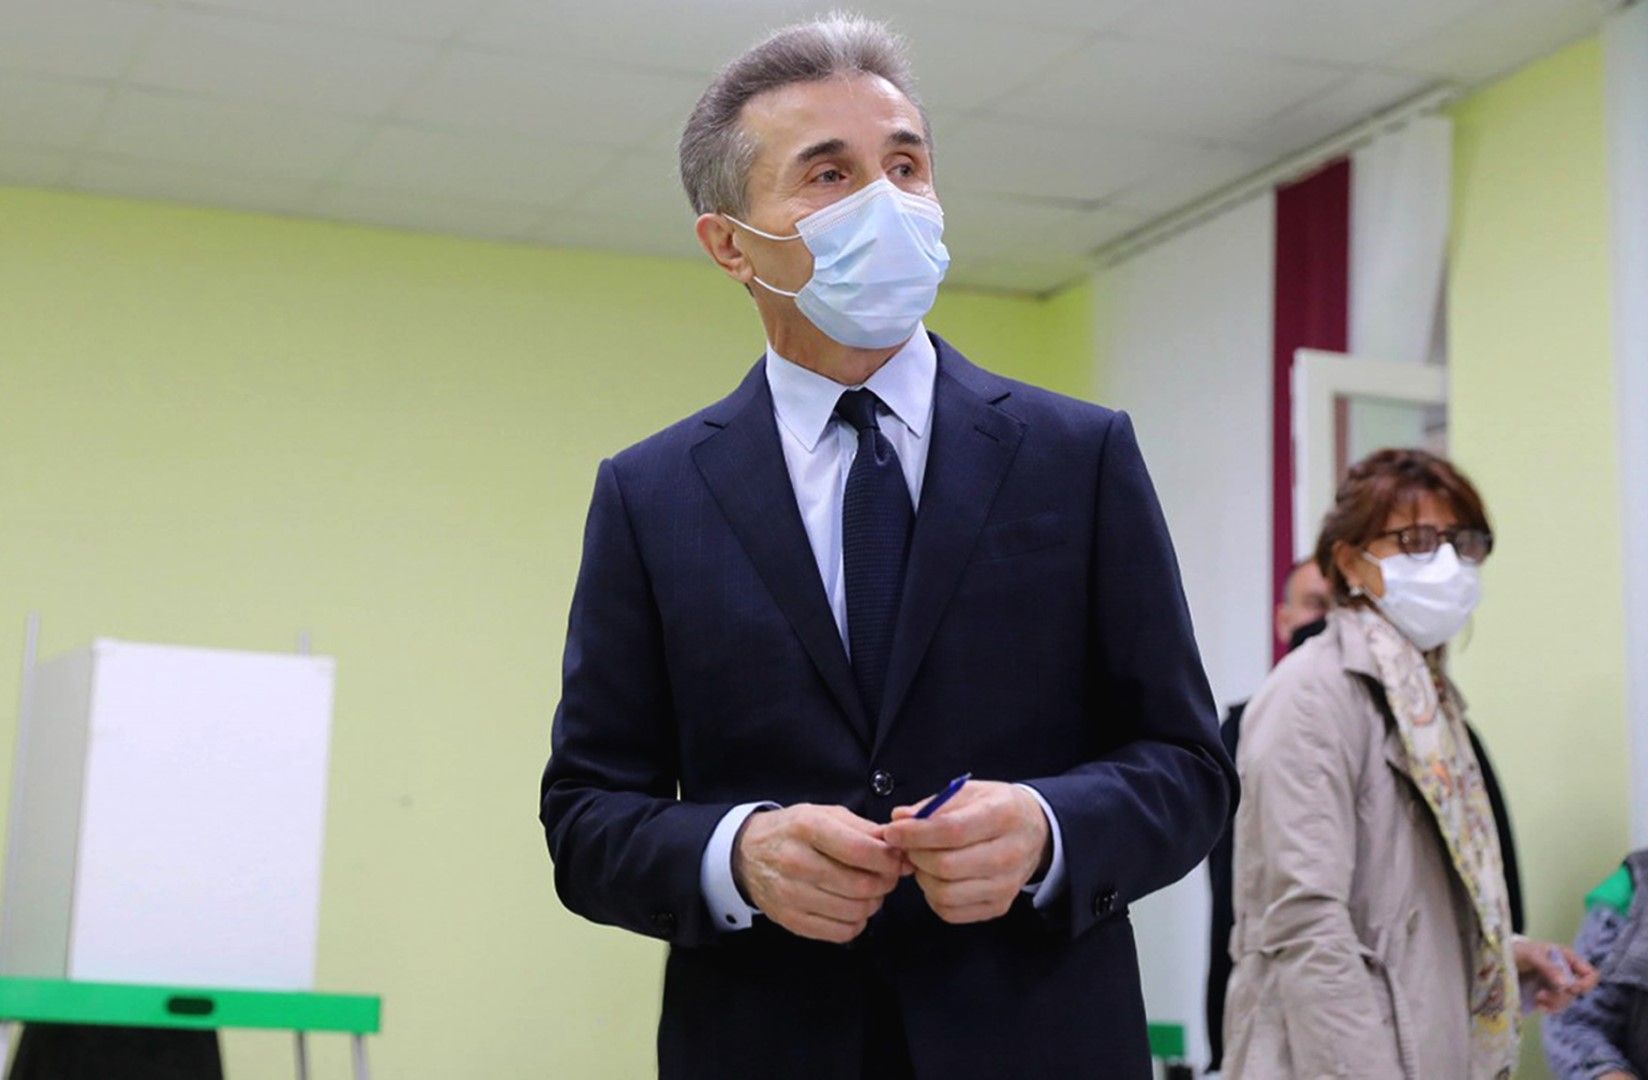  Лидерът на "Грузинска мечта", бизнесменът Бидзина Иванишвили отбеляза третата изборна победа на партията